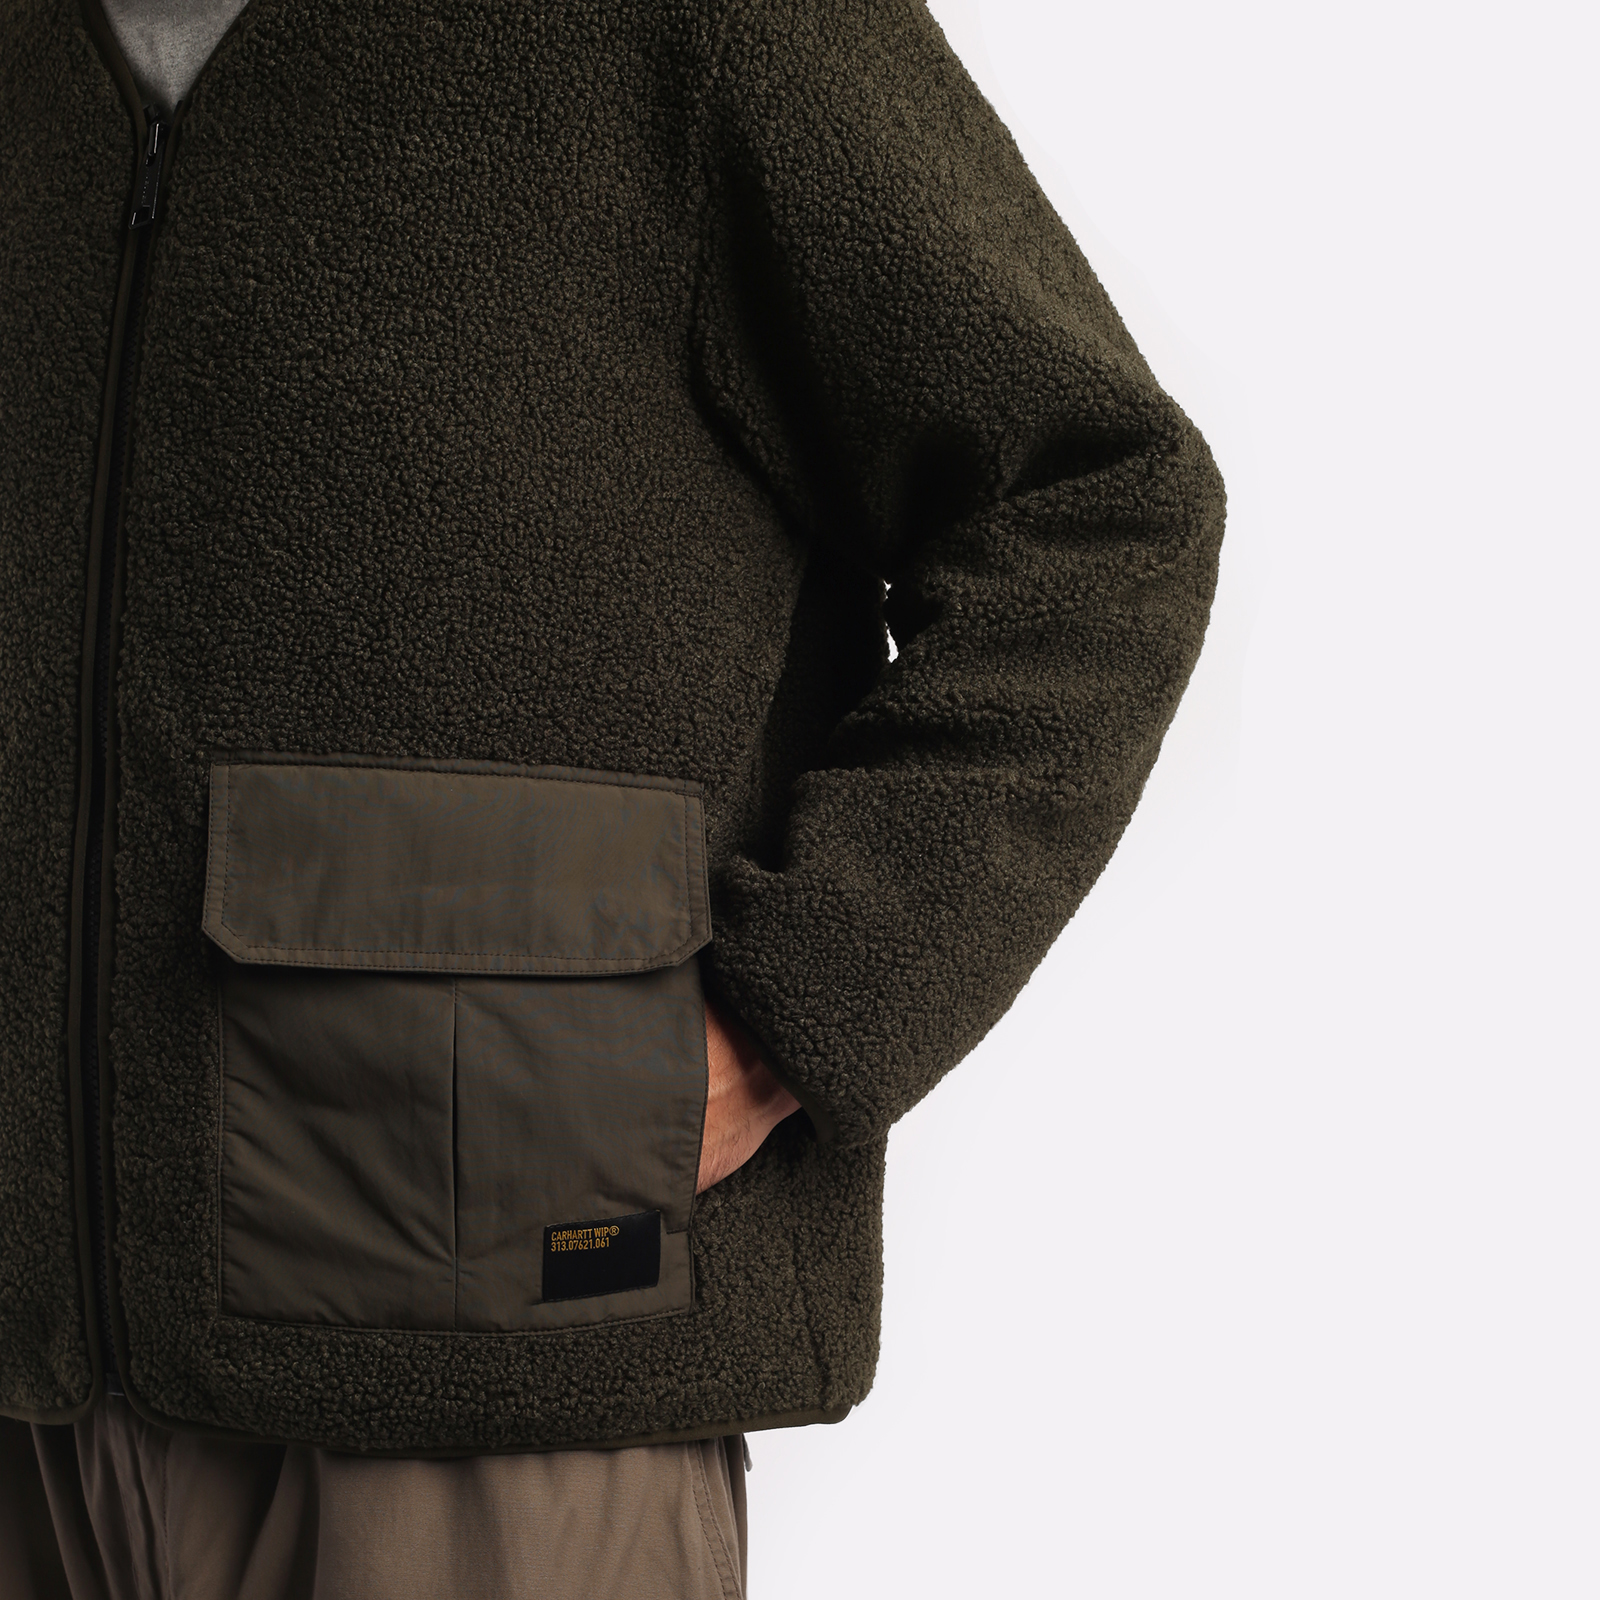 мужская куртка Carhartt WIP Devin Liner  (I032244-cypress)  - цена, описание, фото 3